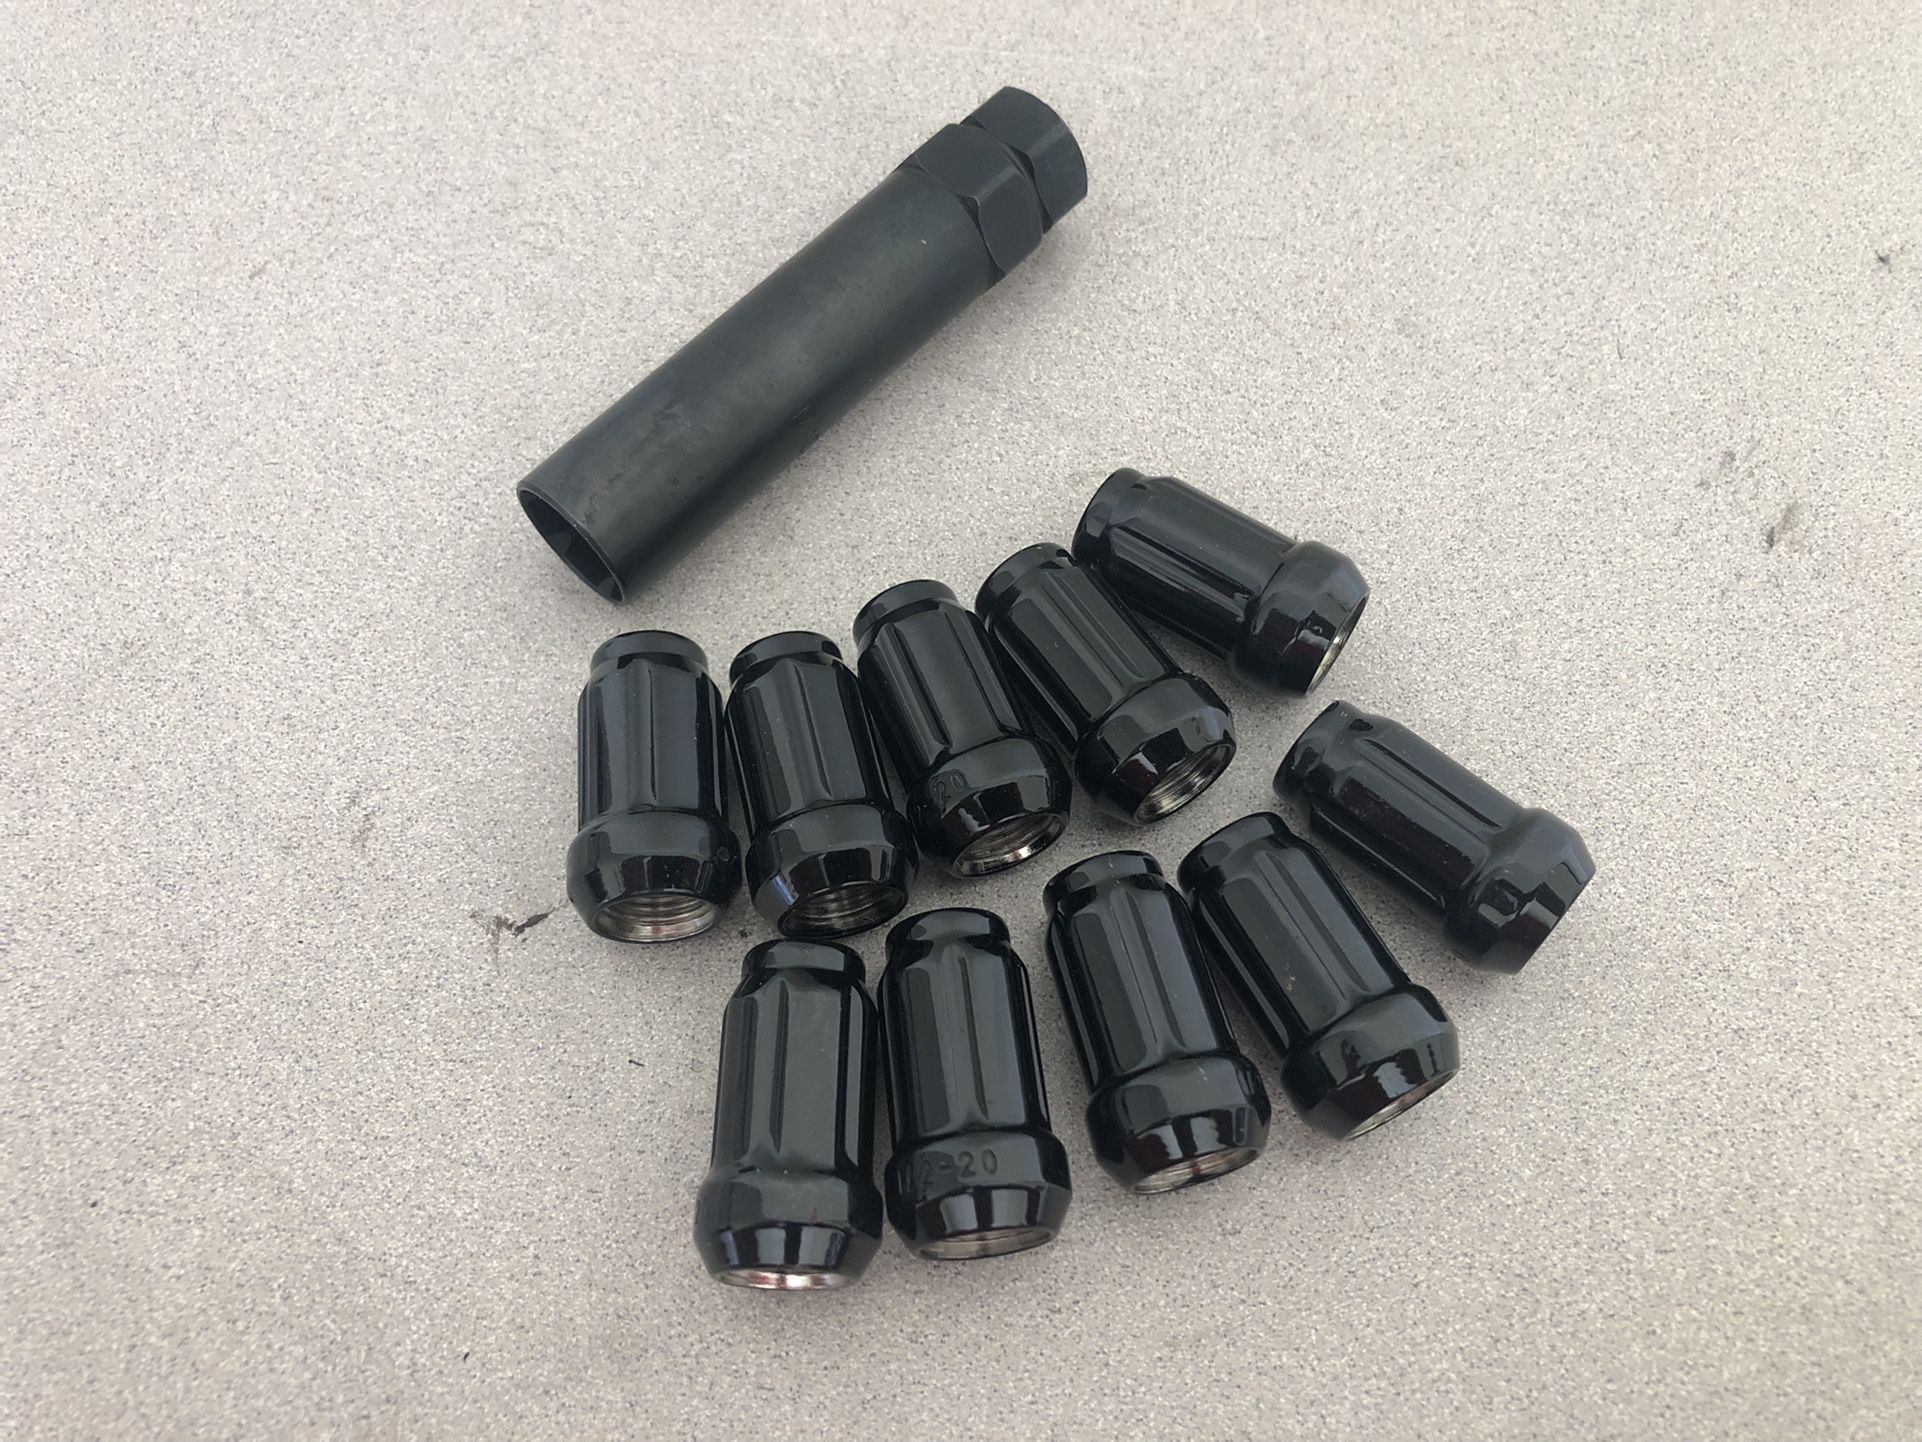 1/2 - 20 Lug Nuts Black Acorn With Socket Key Set 6 Spline Tuner